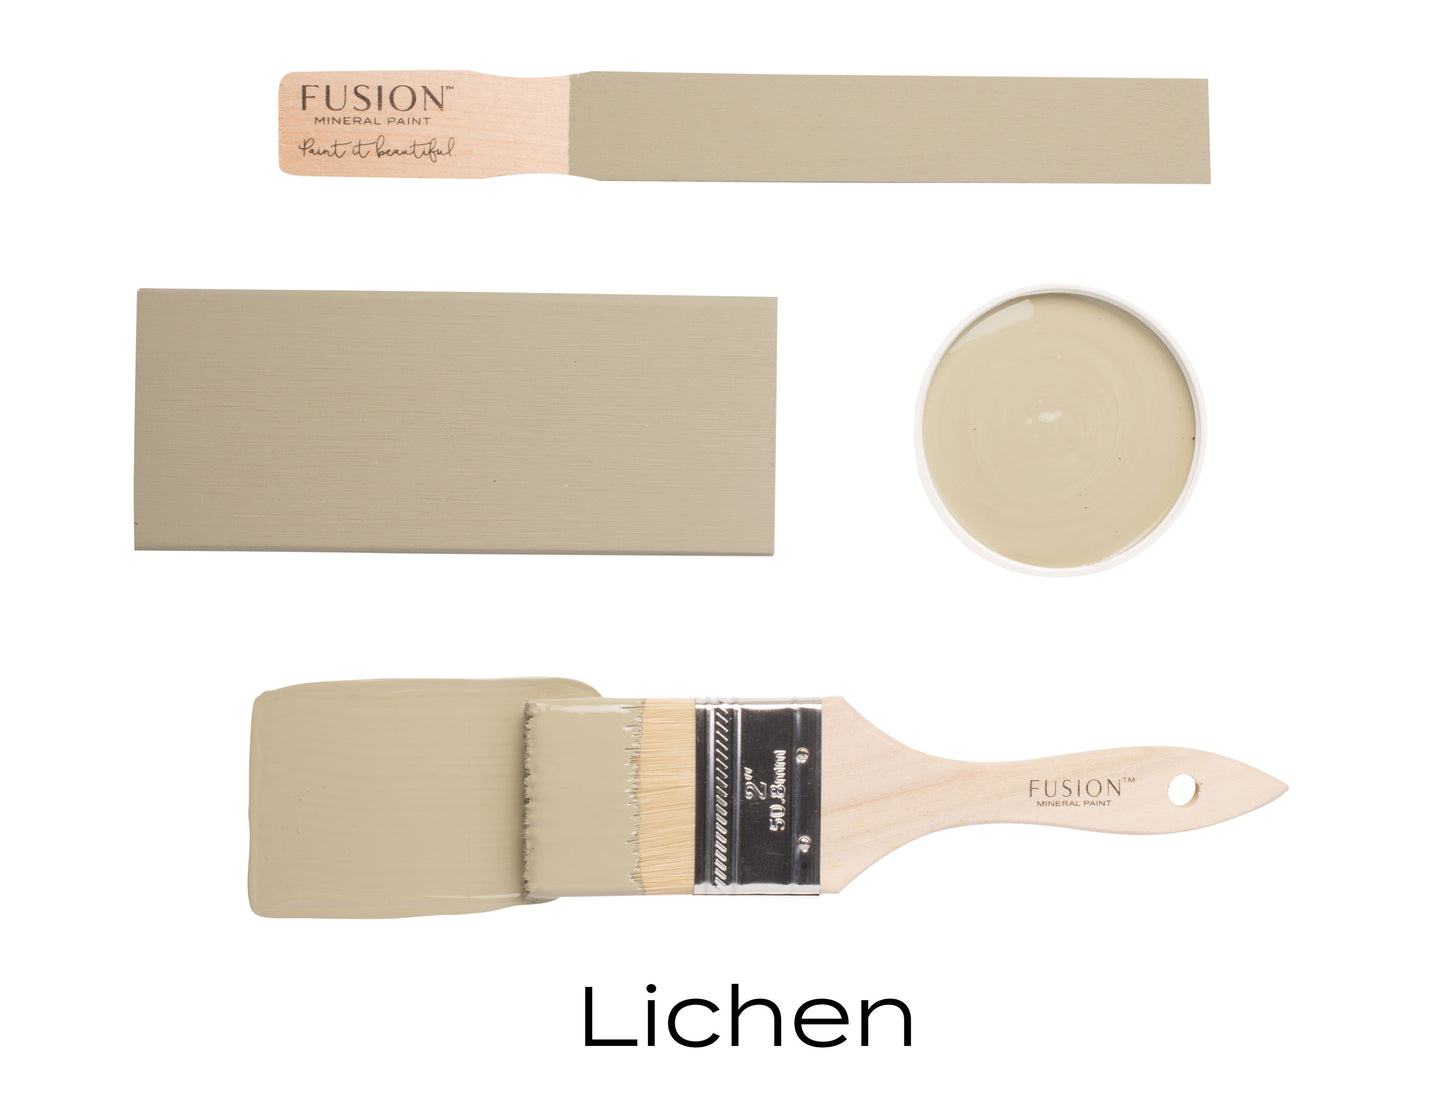 Lichen by Fusion